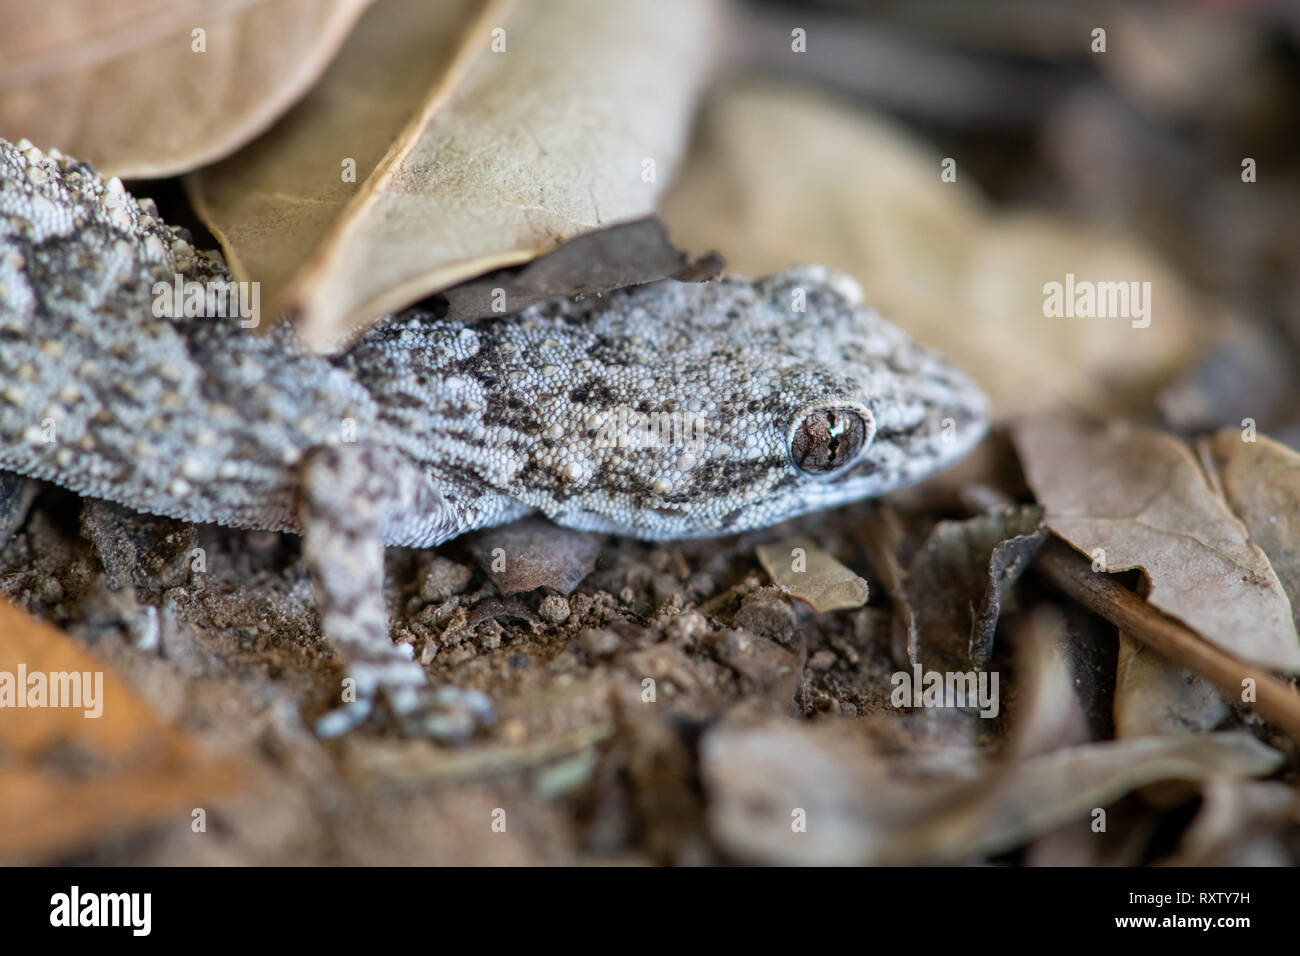 Un Kotschy's gecko dans son environnement naturel Banque D'Images